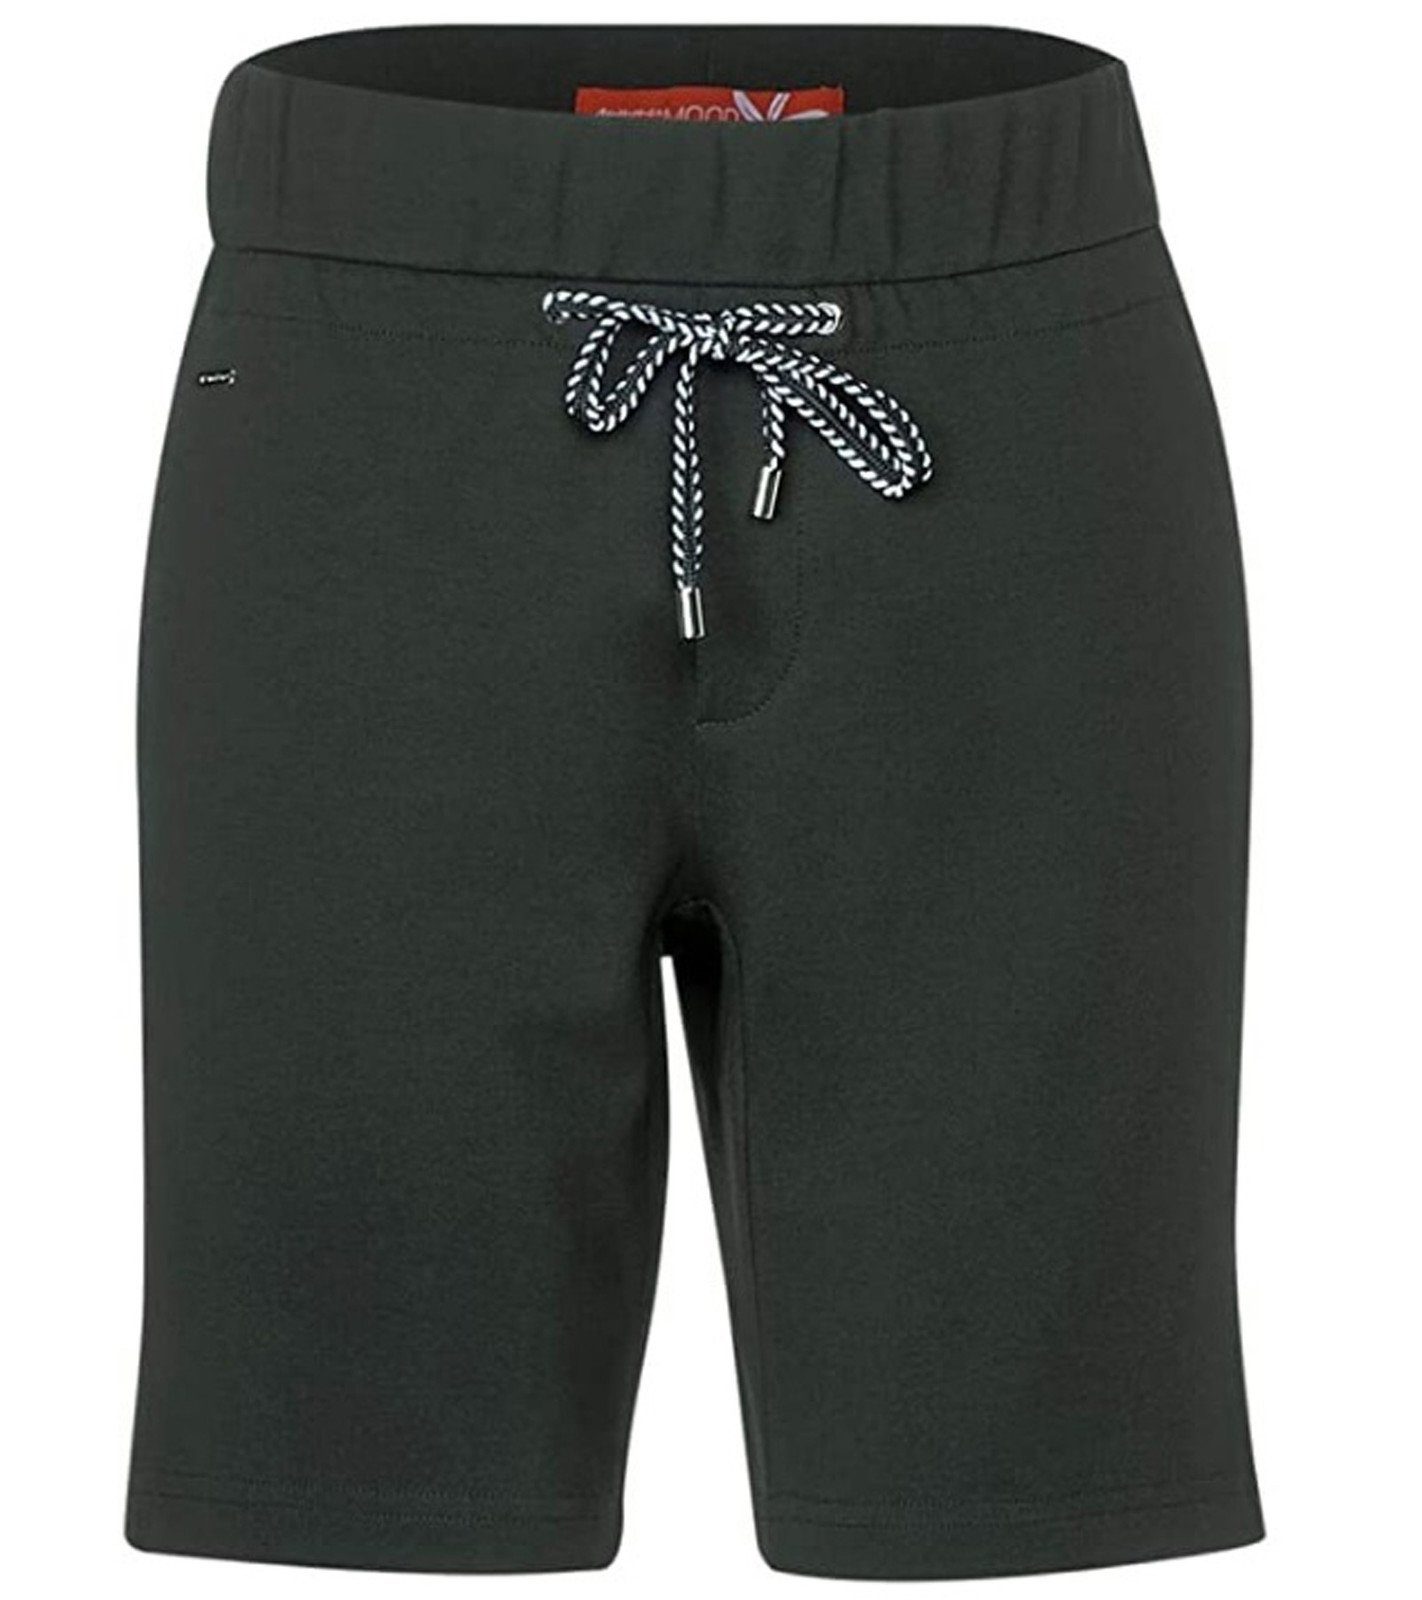 STREET ONE Shorts »Street One Bonny Bermuda coole kurze Hose für Damen  Shorts mit Deko-Leistentaschen Sommer-Hose Khaki-Grün« online kaufen | OTTO